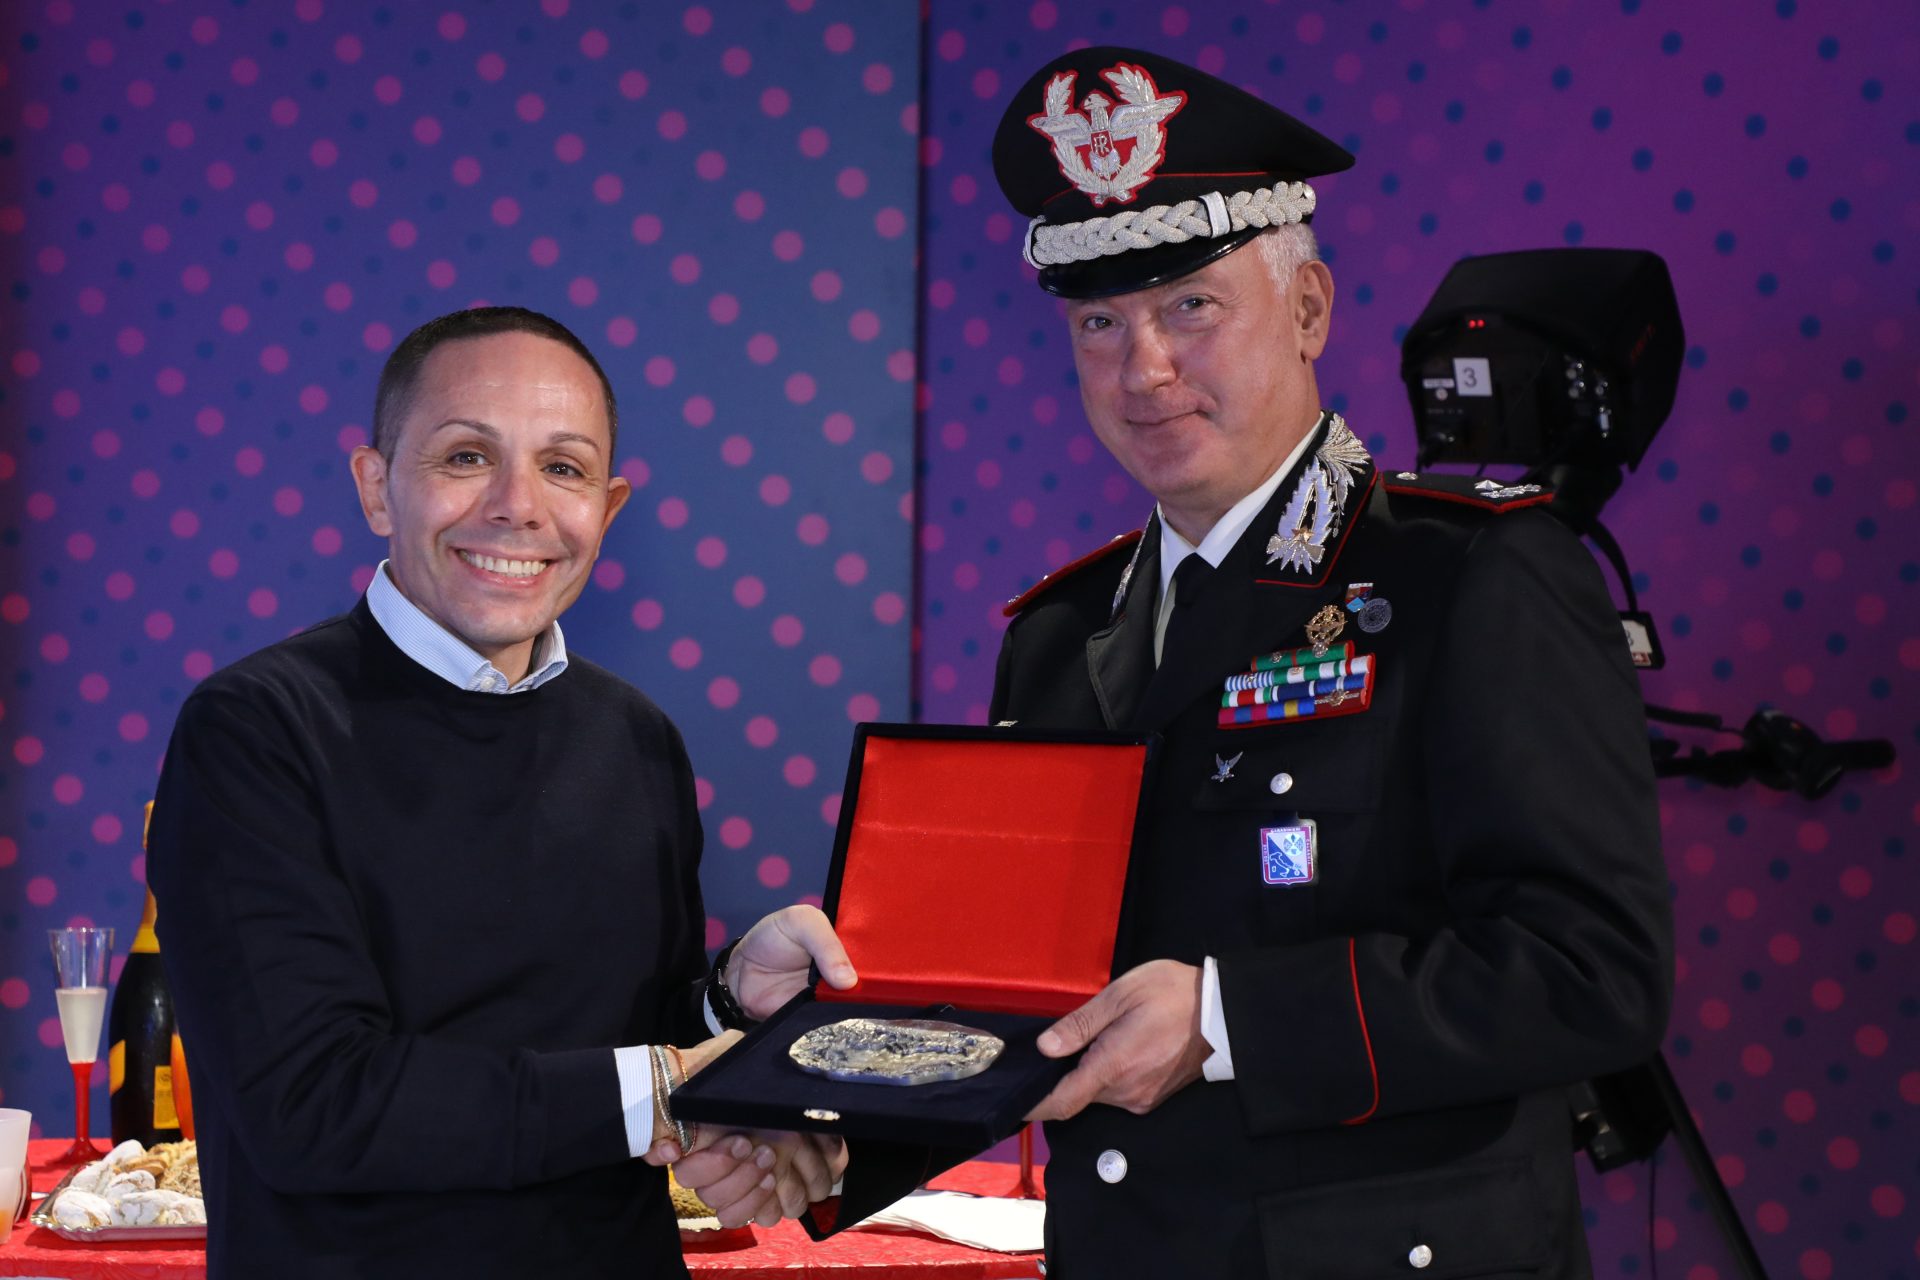 Il generale dei carabinieri Salsano a Lac: «Non arretrate mai»